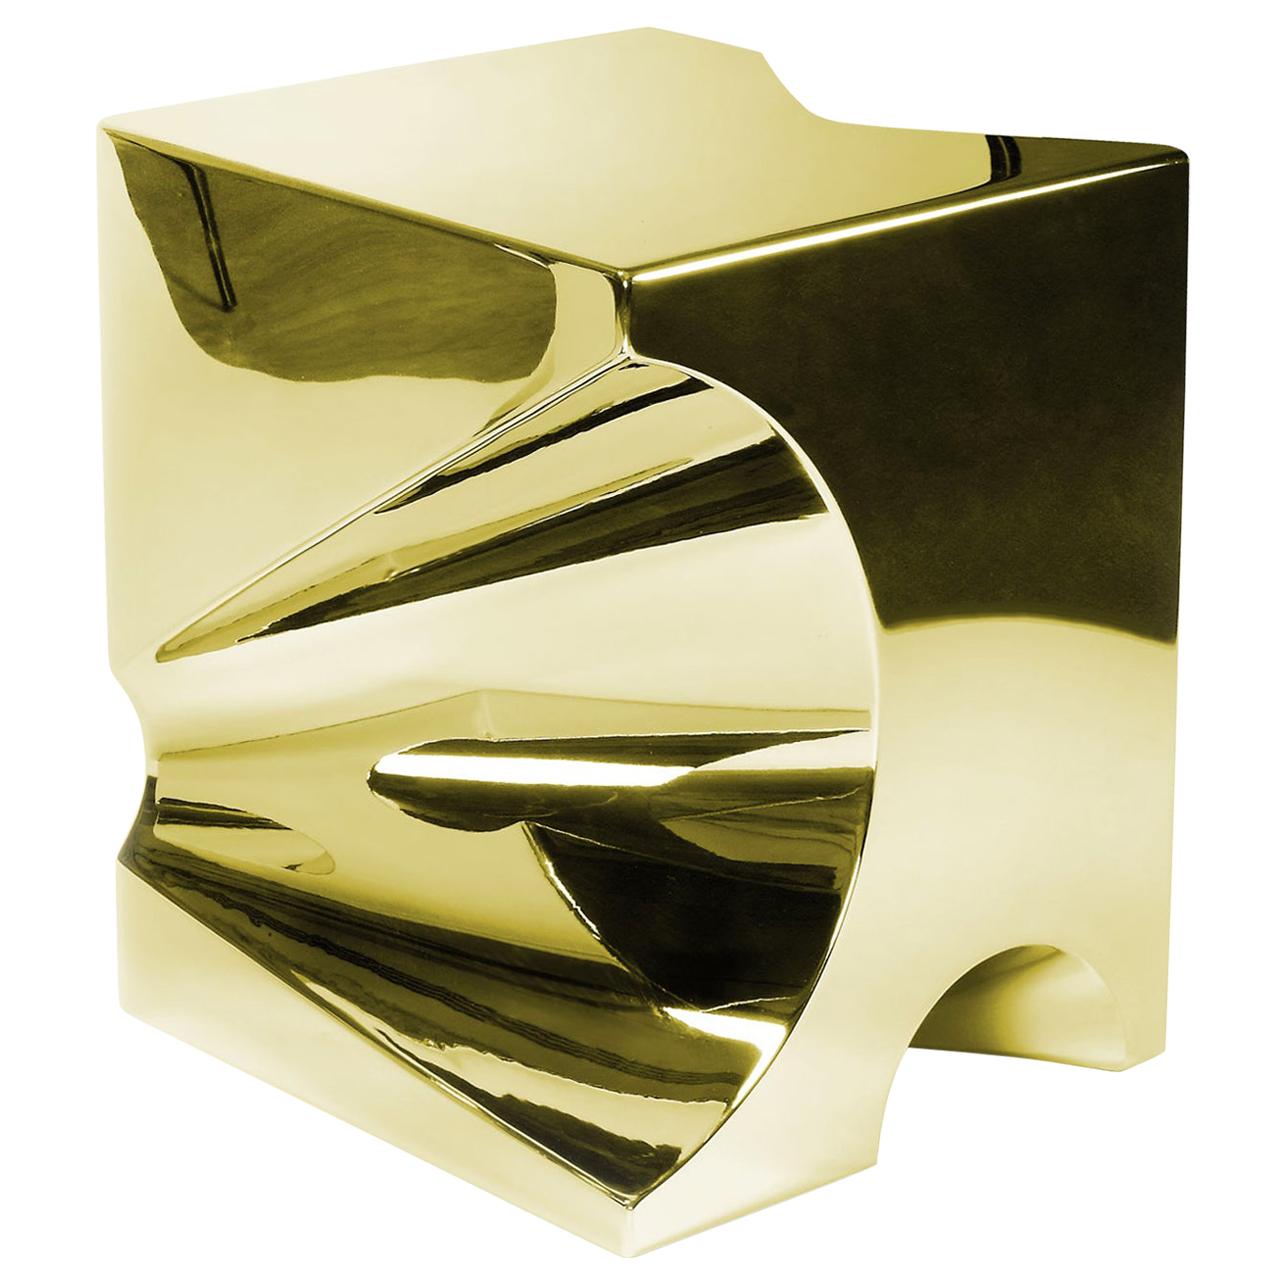 Table d'appoint ou d'extrémité abstraite sculpture miroir or miroir cube en acier design de collection